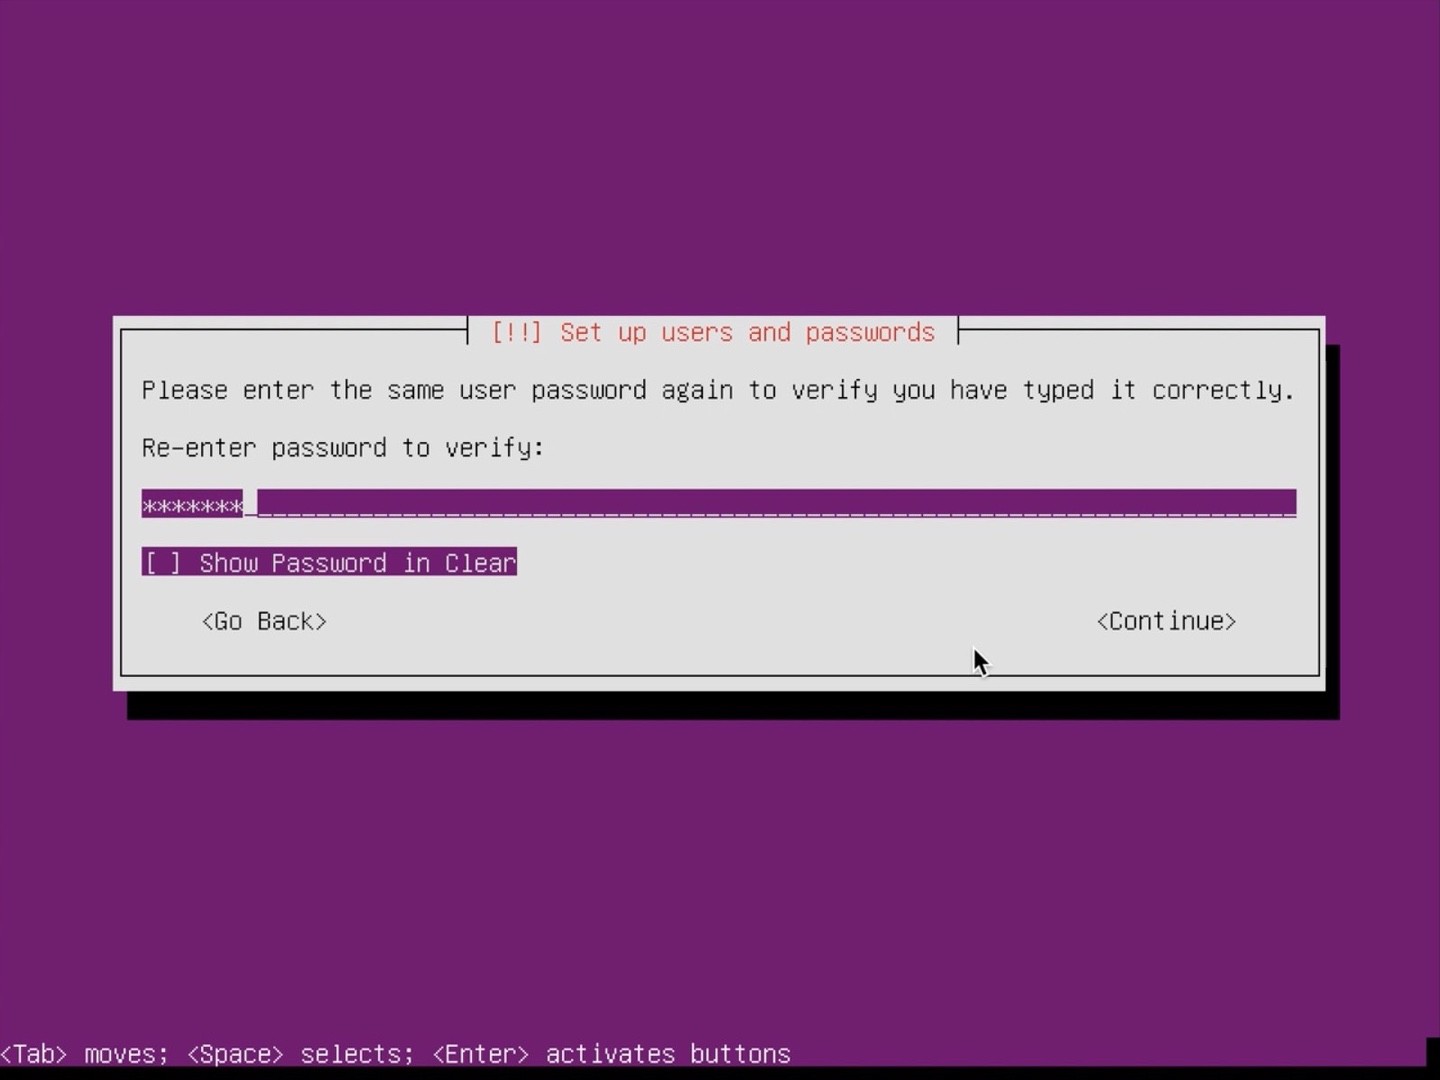 Ubuntu Server Installer reenter password